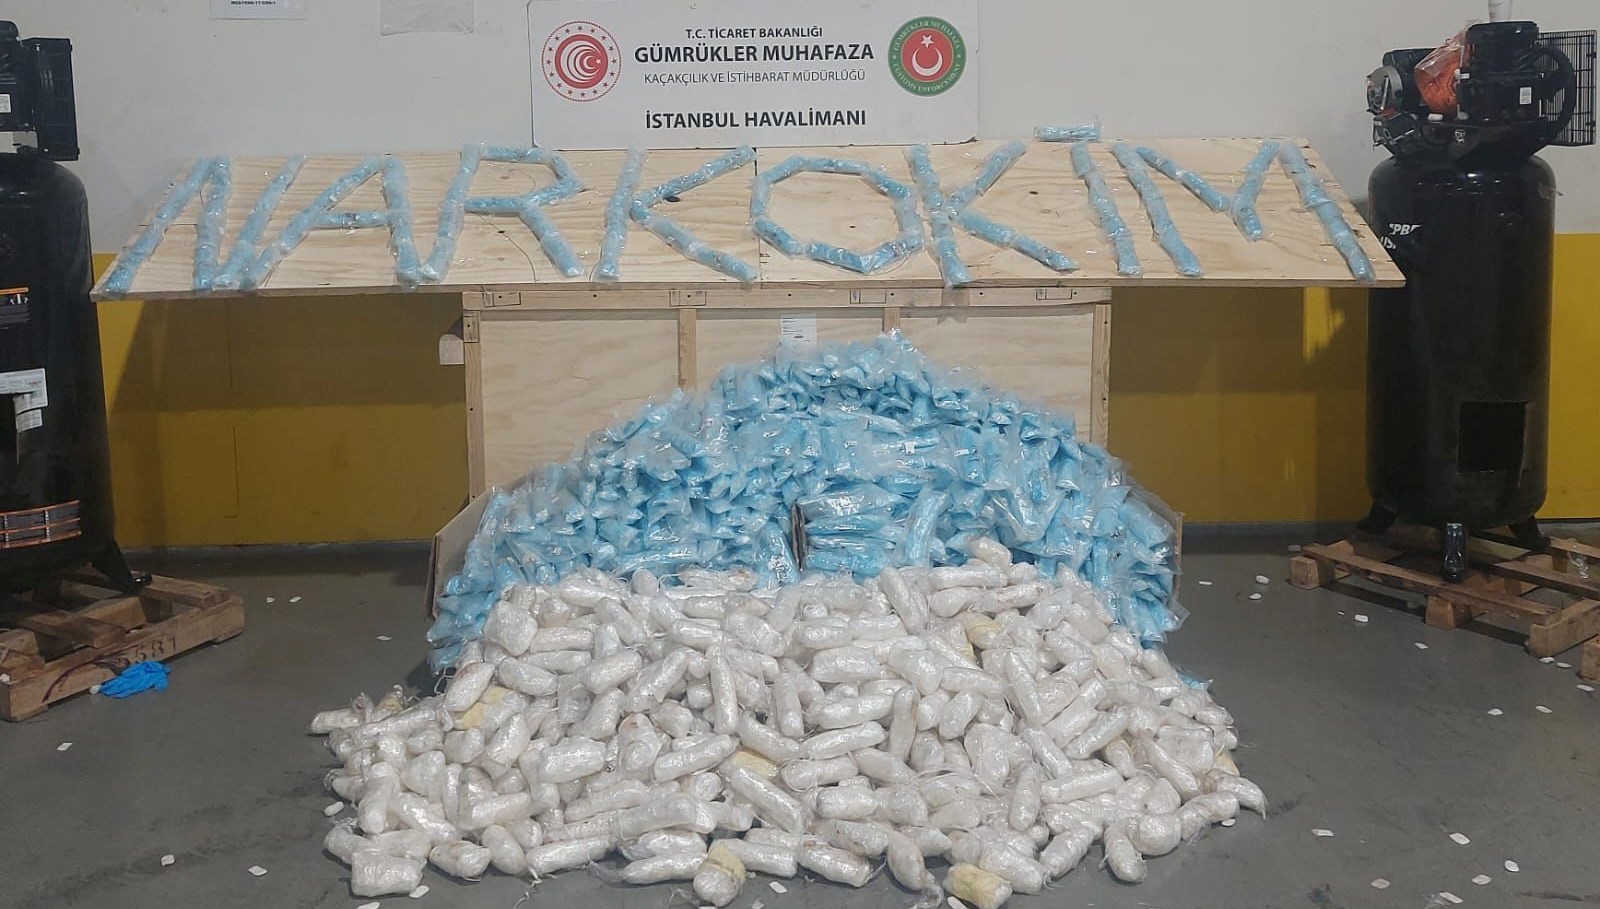 İstanbul Havalimanı’nda 427 kilogram metamfetamin ele geçirildi